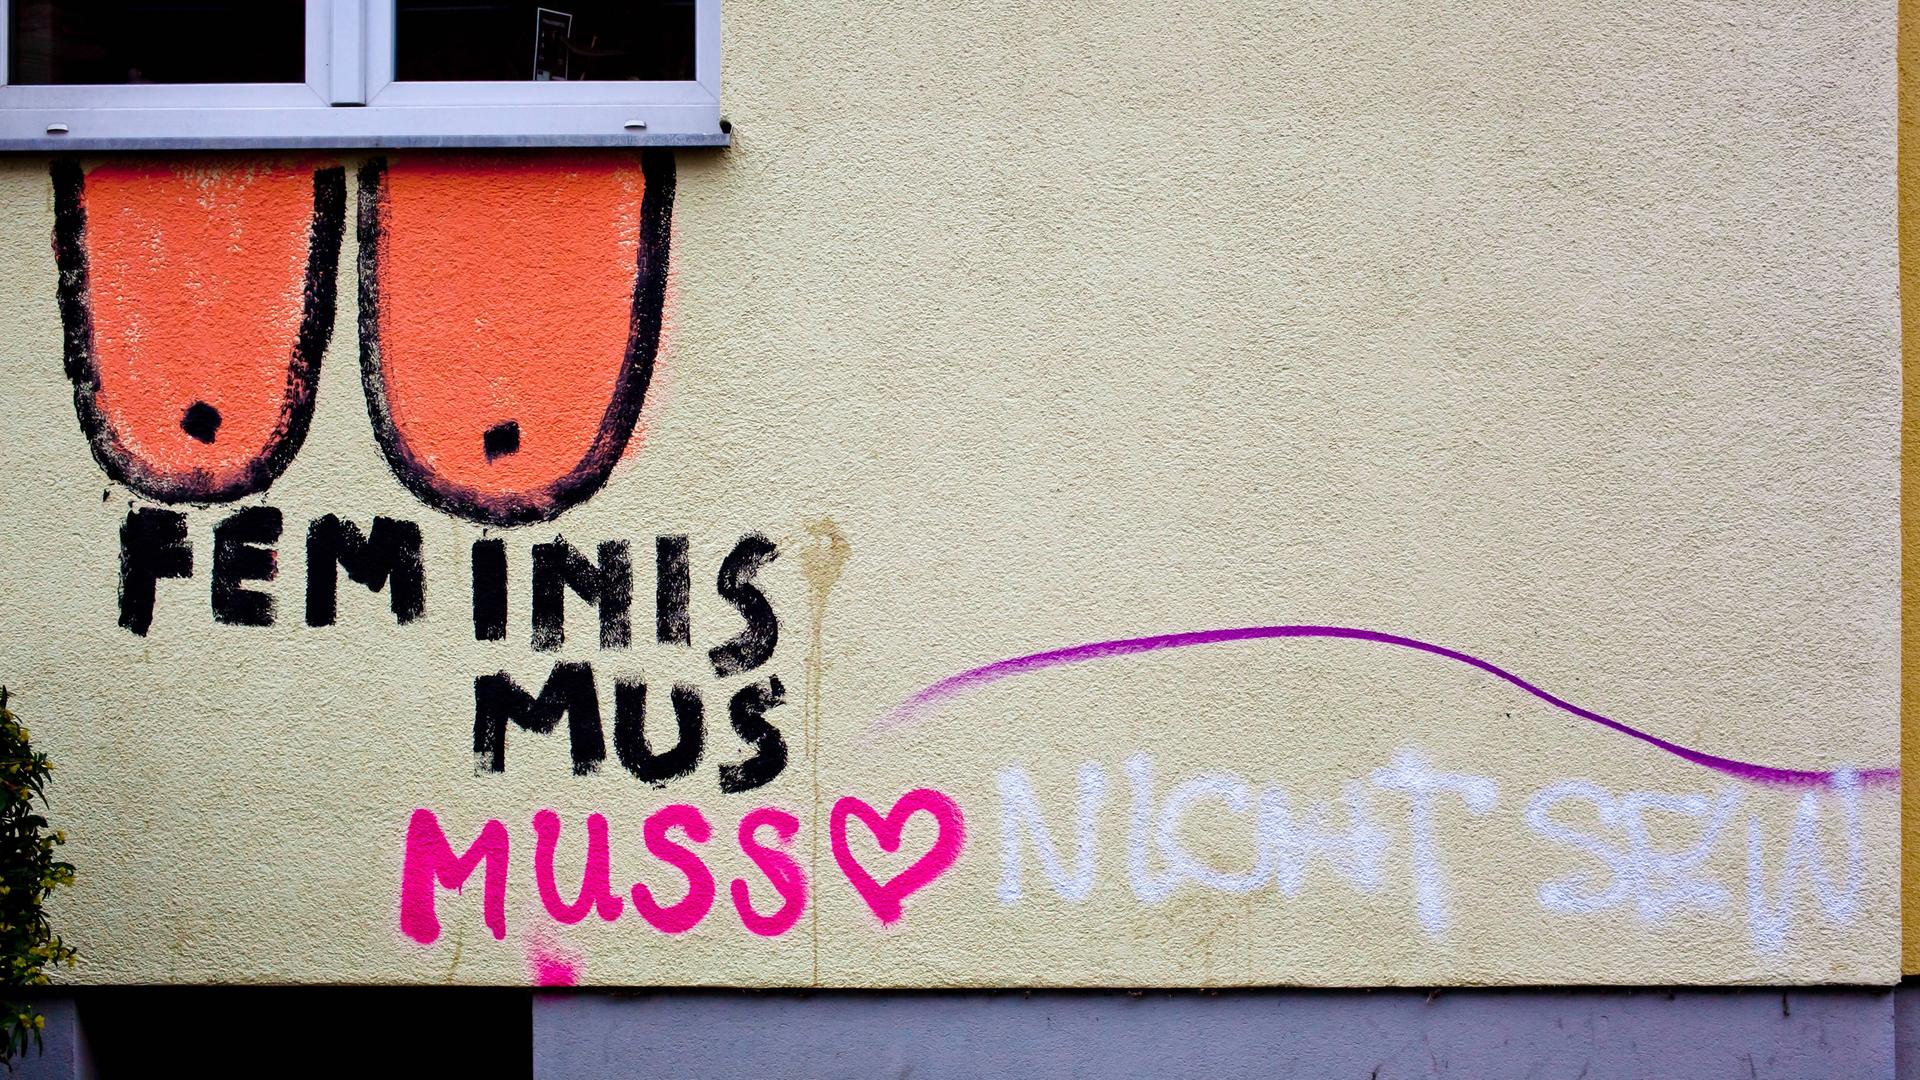 An einer Wand ist ein Grafitto gesprüht mit "Feminismus muss" und der Ergänzung "nicht sein". Dazu wurden Brüste gemalt.